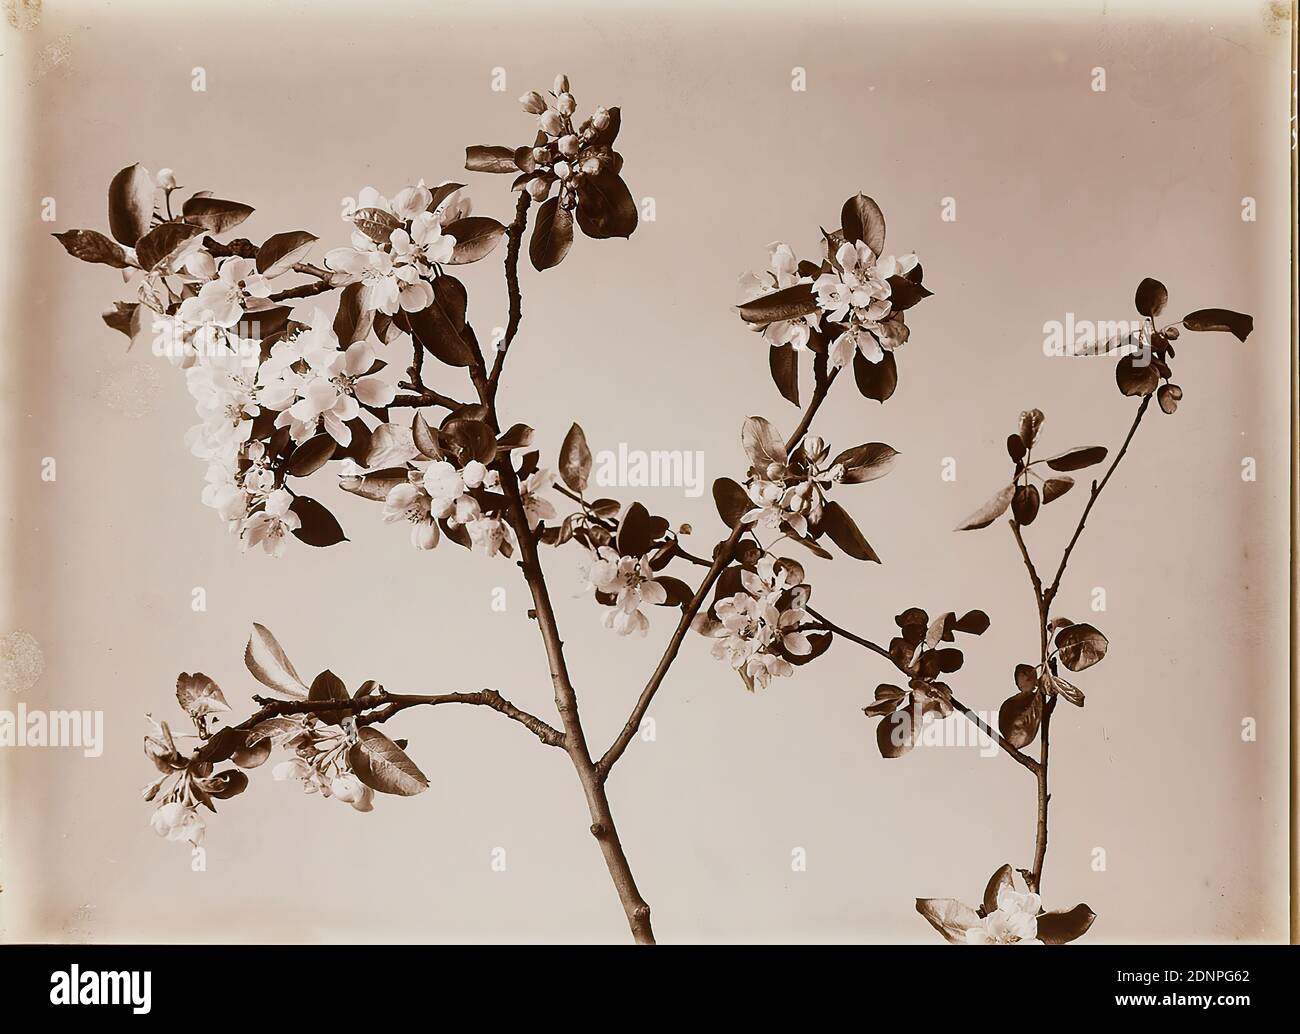 Wilhelm Weimar, cerisier, papier collodion, procédé positif noir et blanc, total: Hauteur: 23,30 cm; largeur: 17,20 cm, numéroté: Vert: 273, photographie, arbres, arbustes Banque D'Images